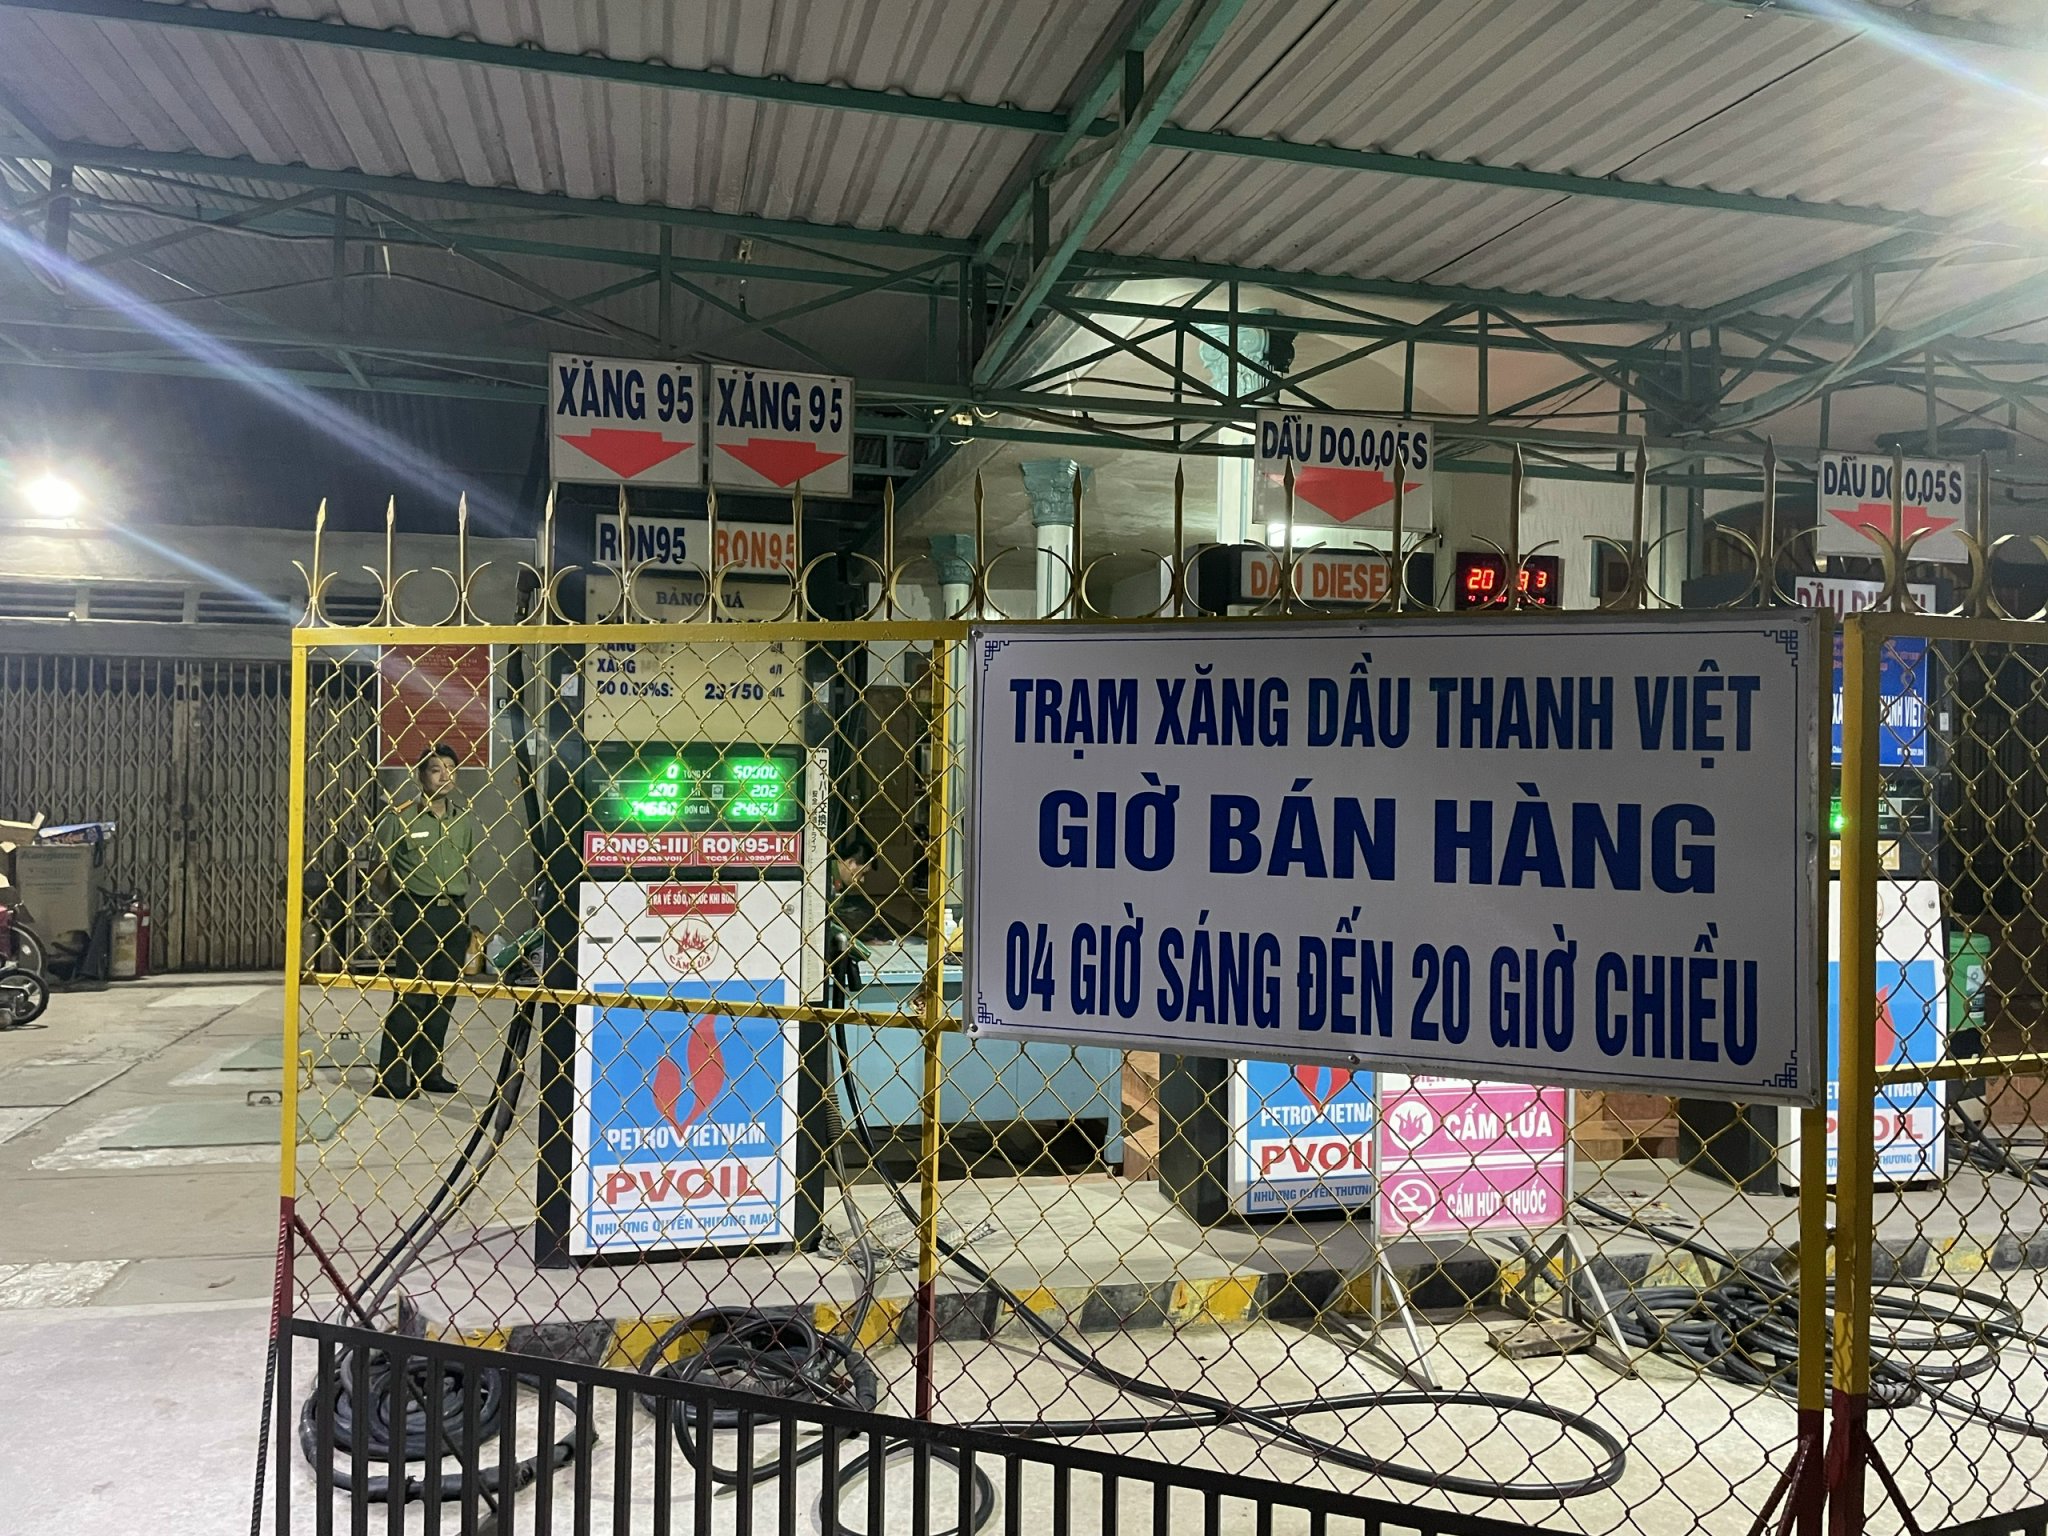 Giảm thời gian bán hàng so với niêm yết, một cửa hàng xăng dGiảm thời gian bán hàng so với niêm yết, một cửa hàng xăng dầu tại Tây Ninh bị phạt tại Tây Ninh bị phạt